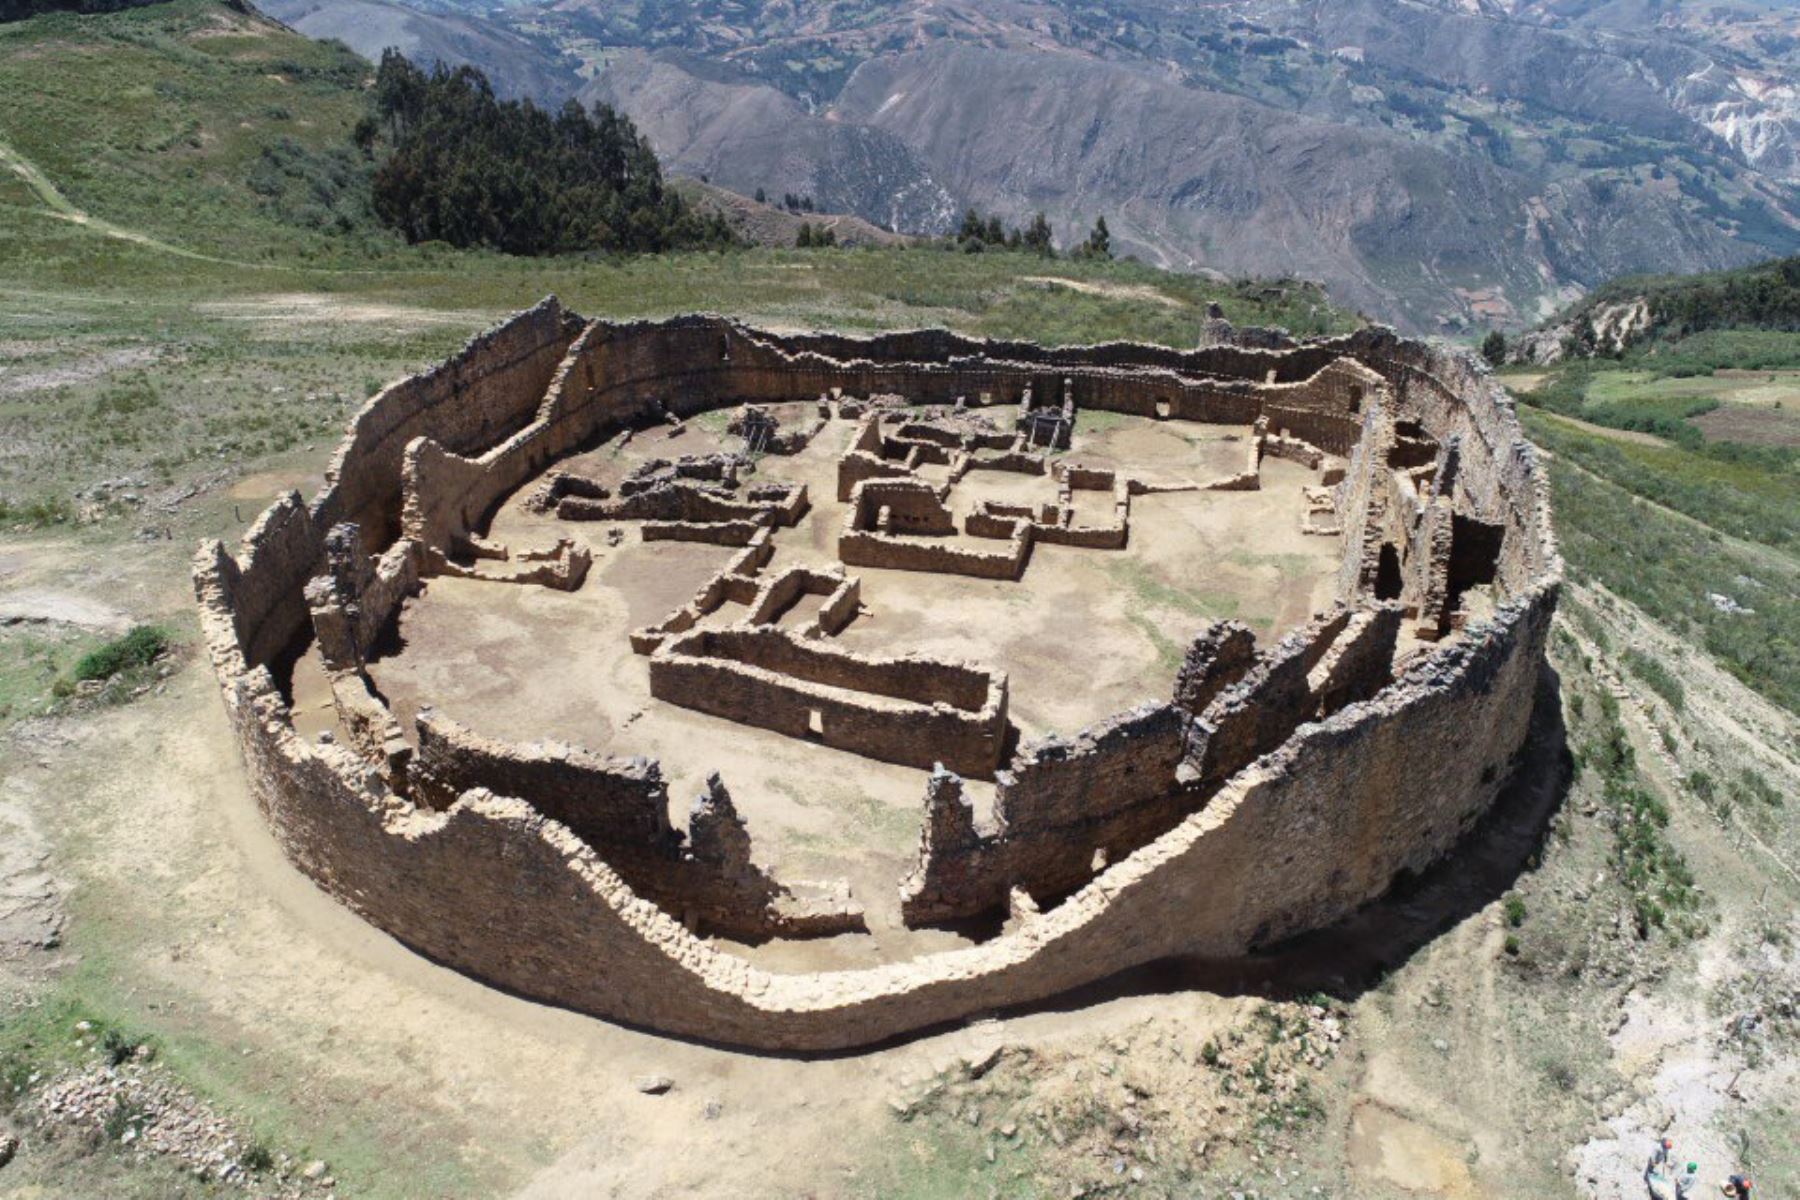 Investigación arqueológica en La Libertad se enfocará este año en sitio Cerro Sazón, anuncia la Unidad Ejecutora 007. ANDINA/Difusión